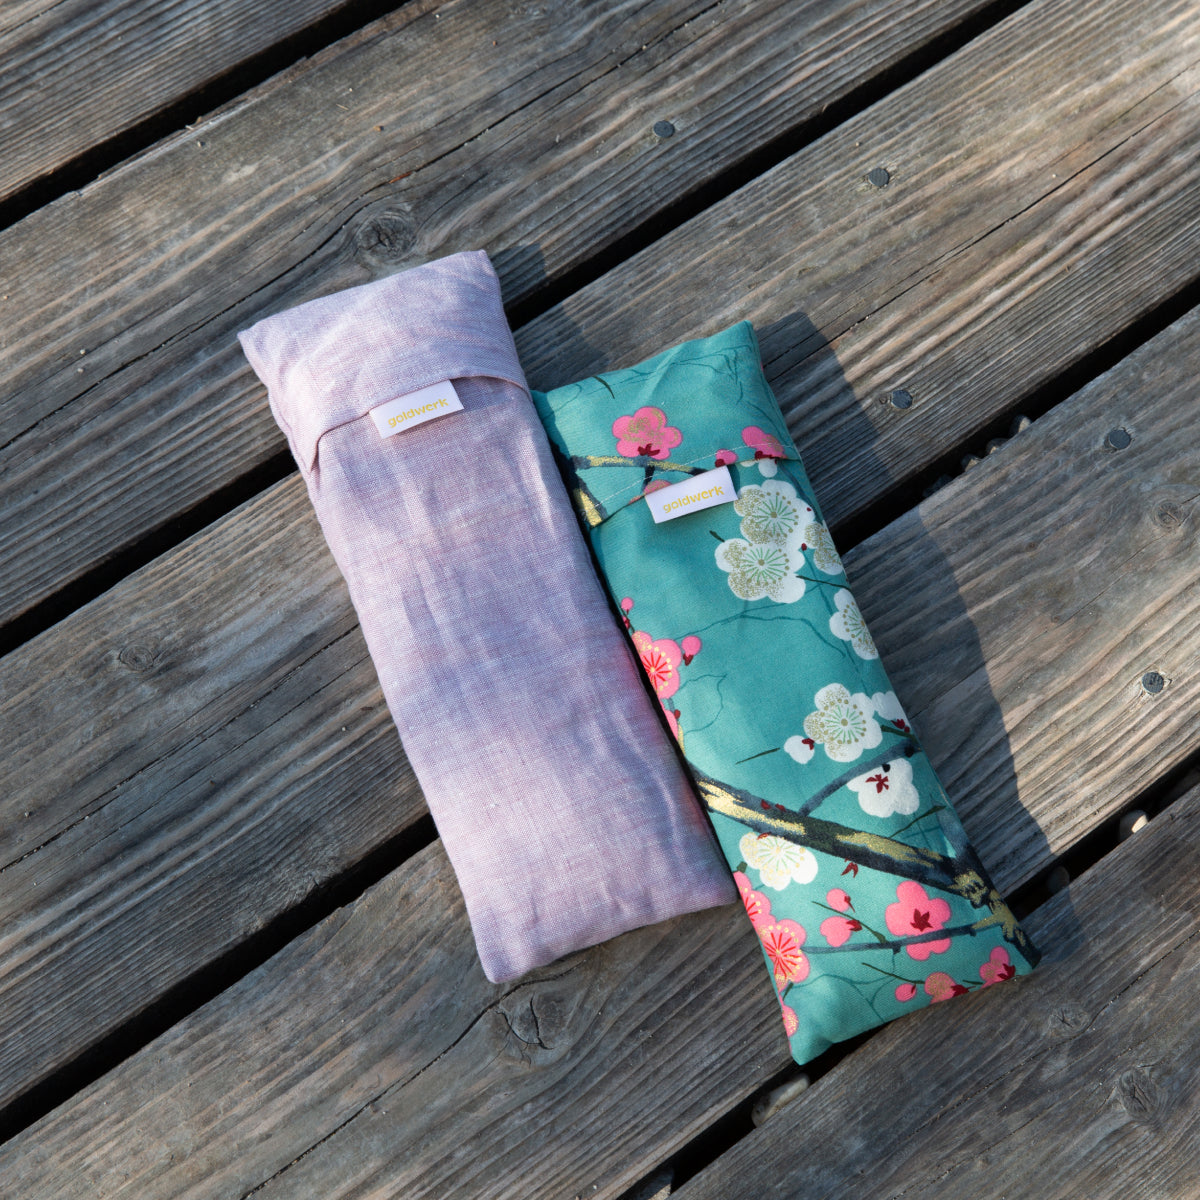 Zwei Augenkissen in rosa und bunt liegen auf einem Holzsteg.